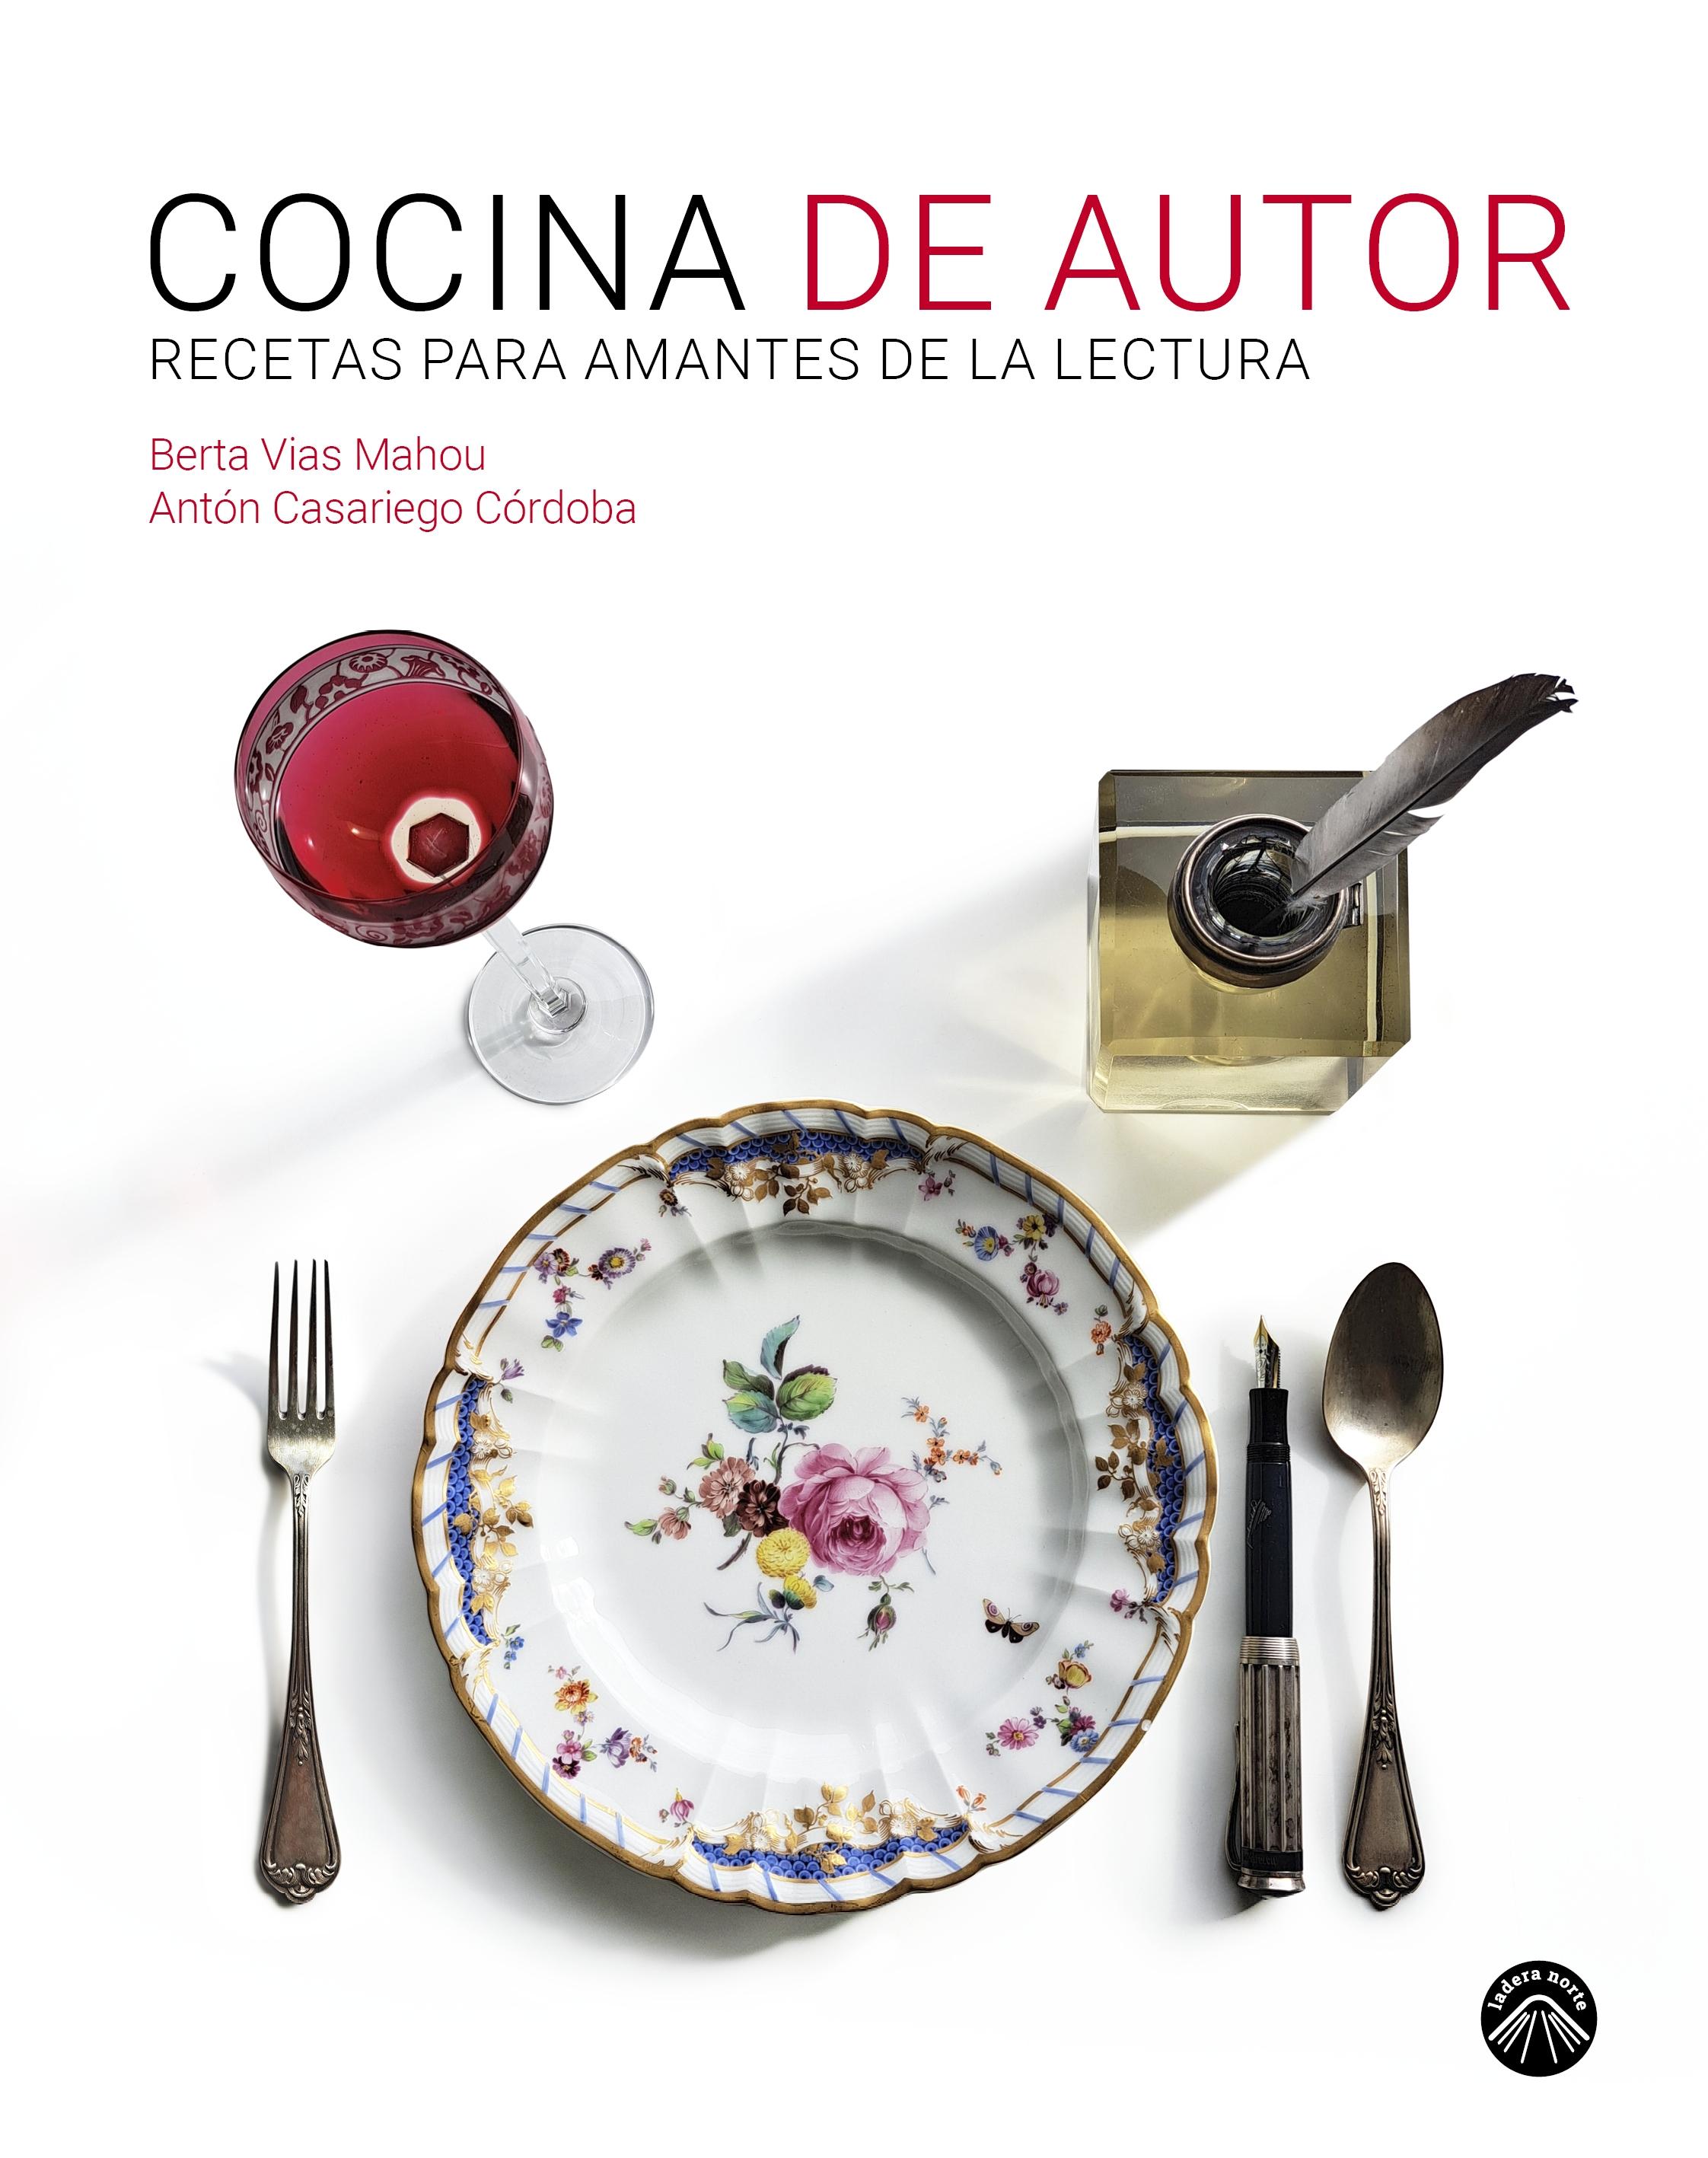 Cocina de Autor "Recetas para Amantes de la Lectura"